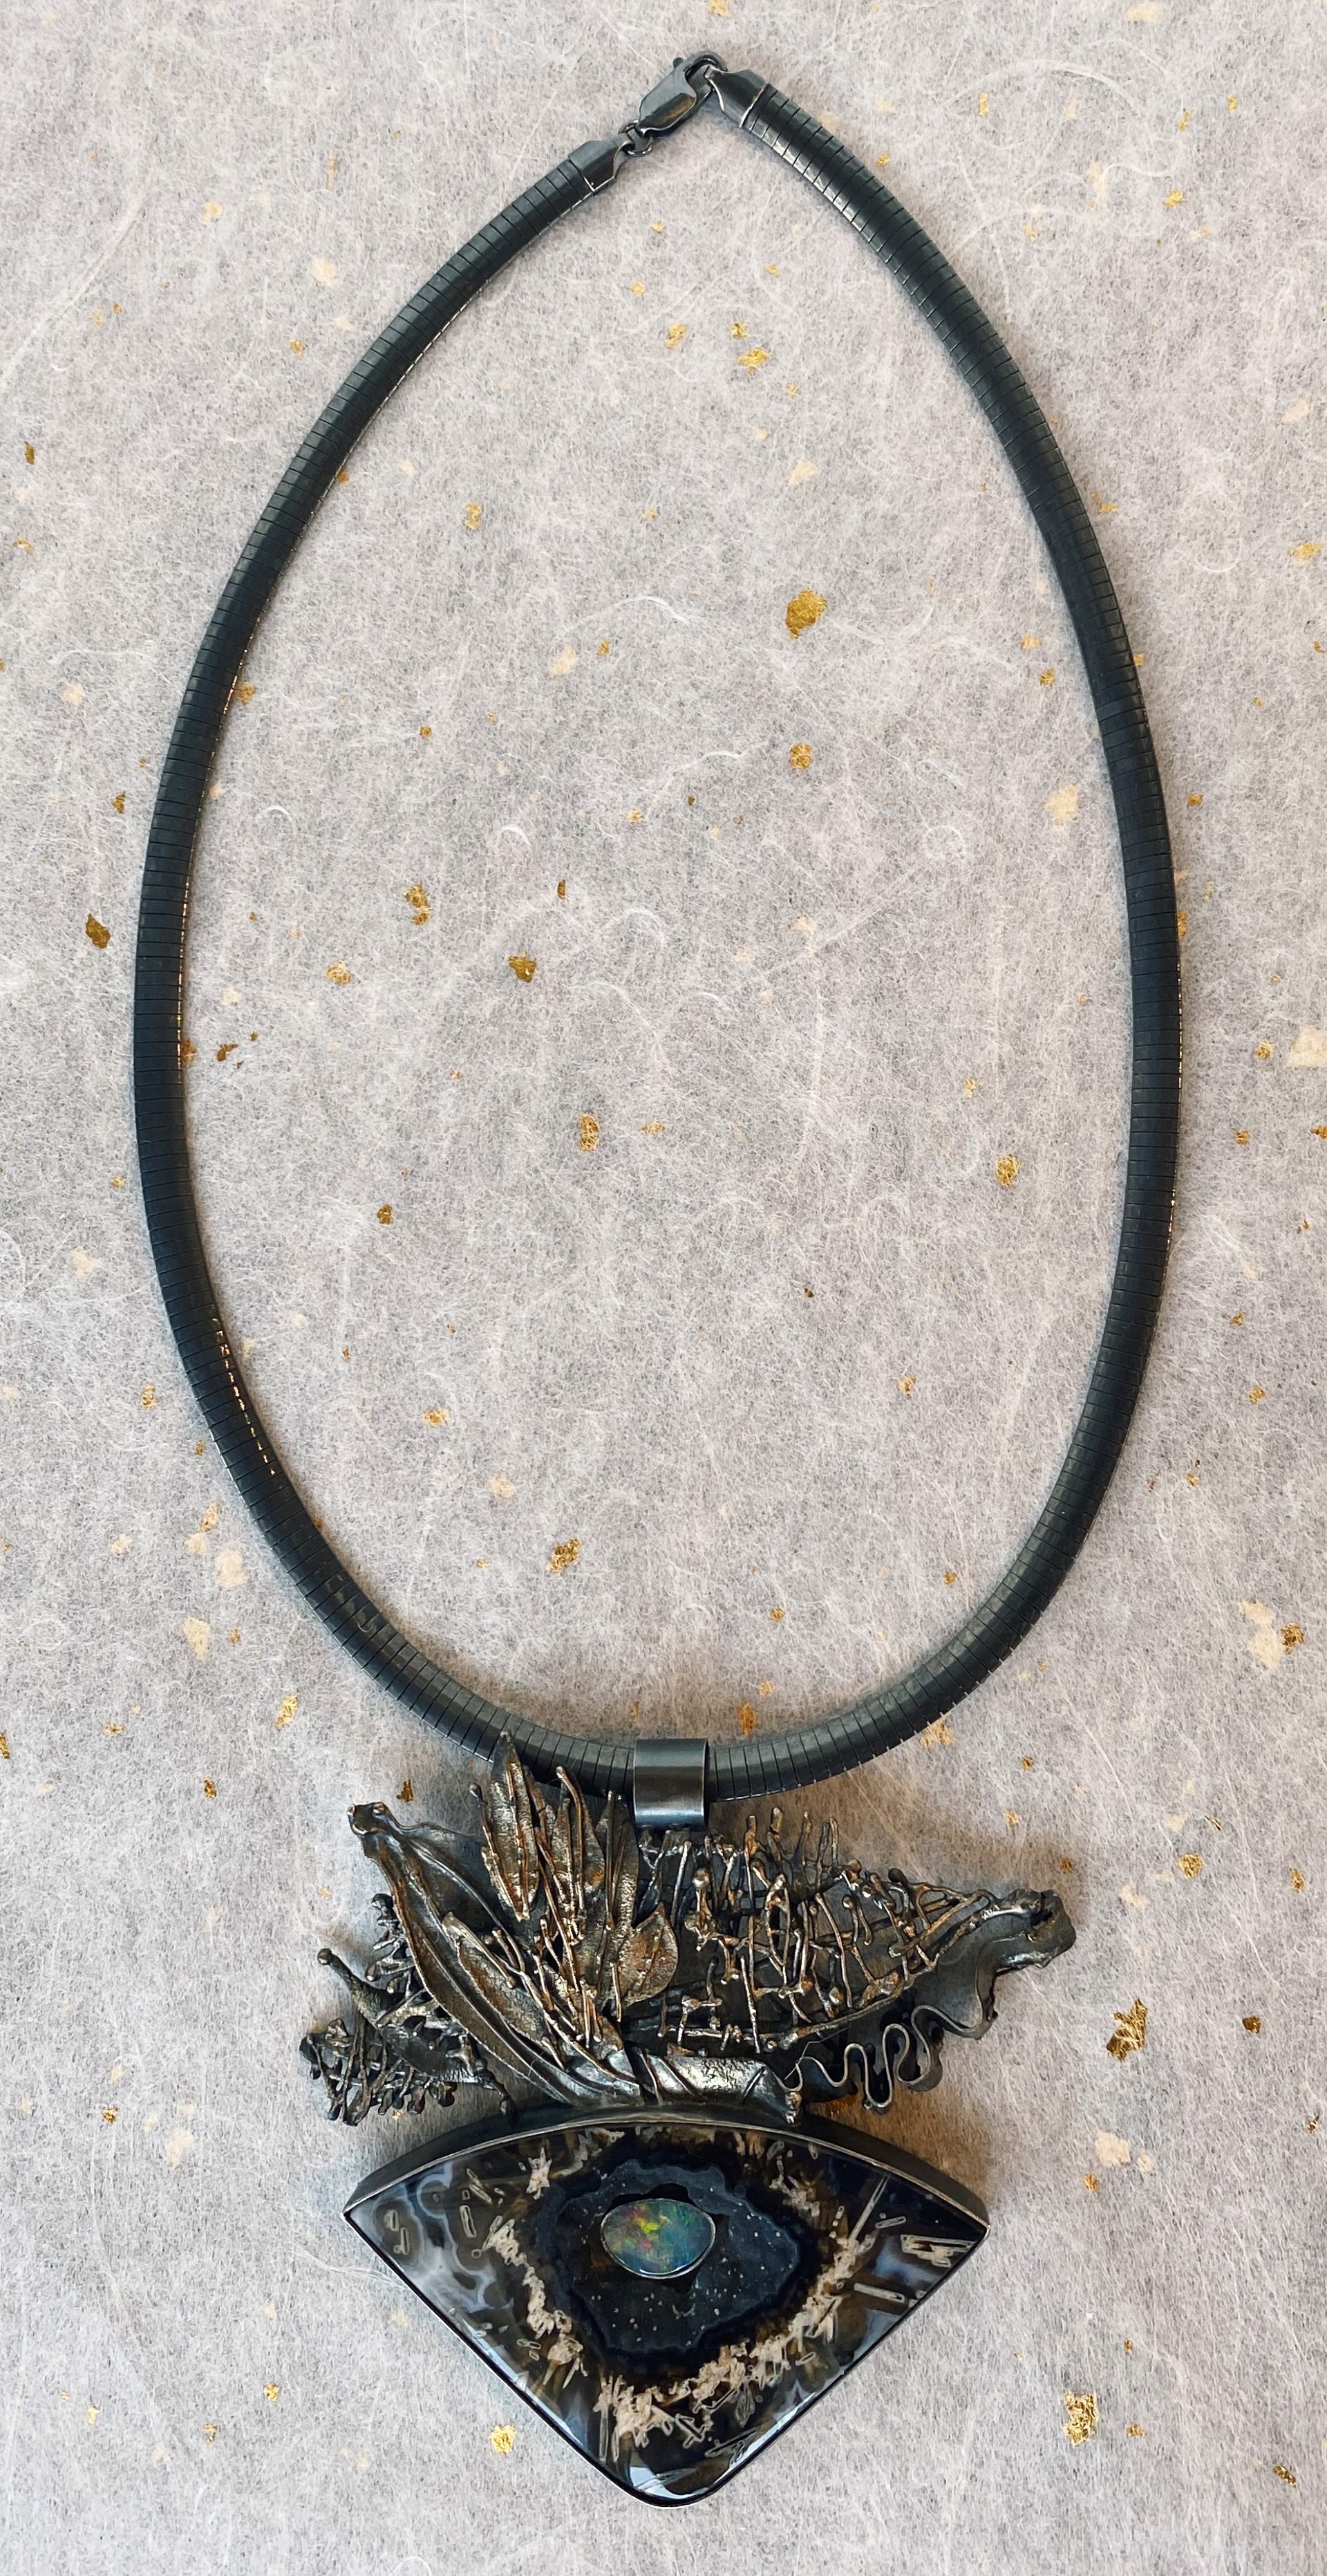 Necklace #5 by Marilynn Nicholson